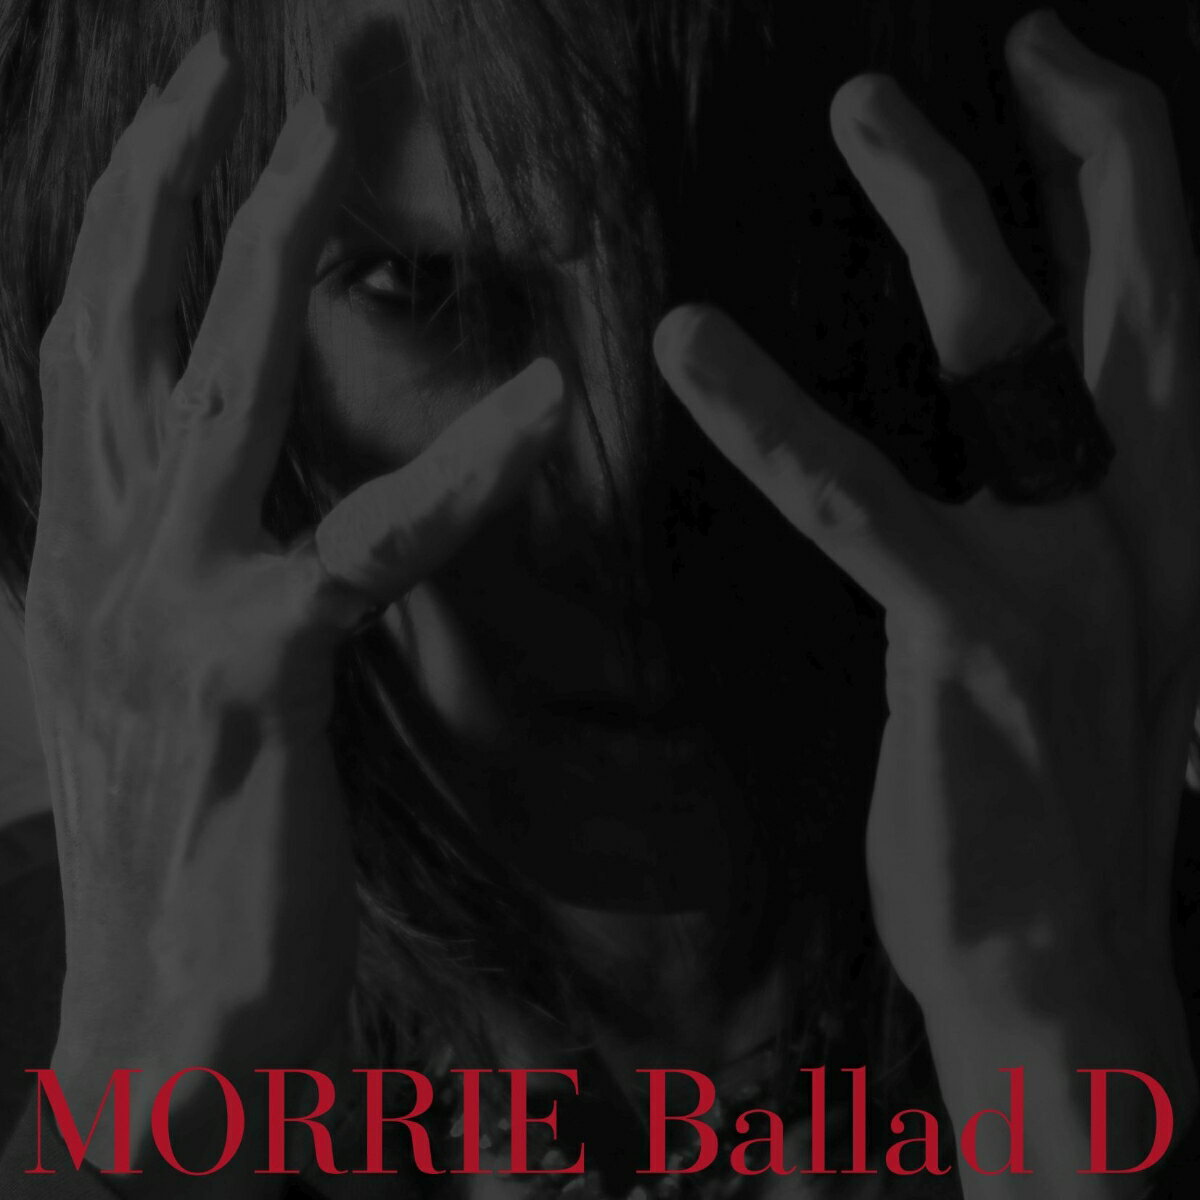 Ballad D【Regular Edition】